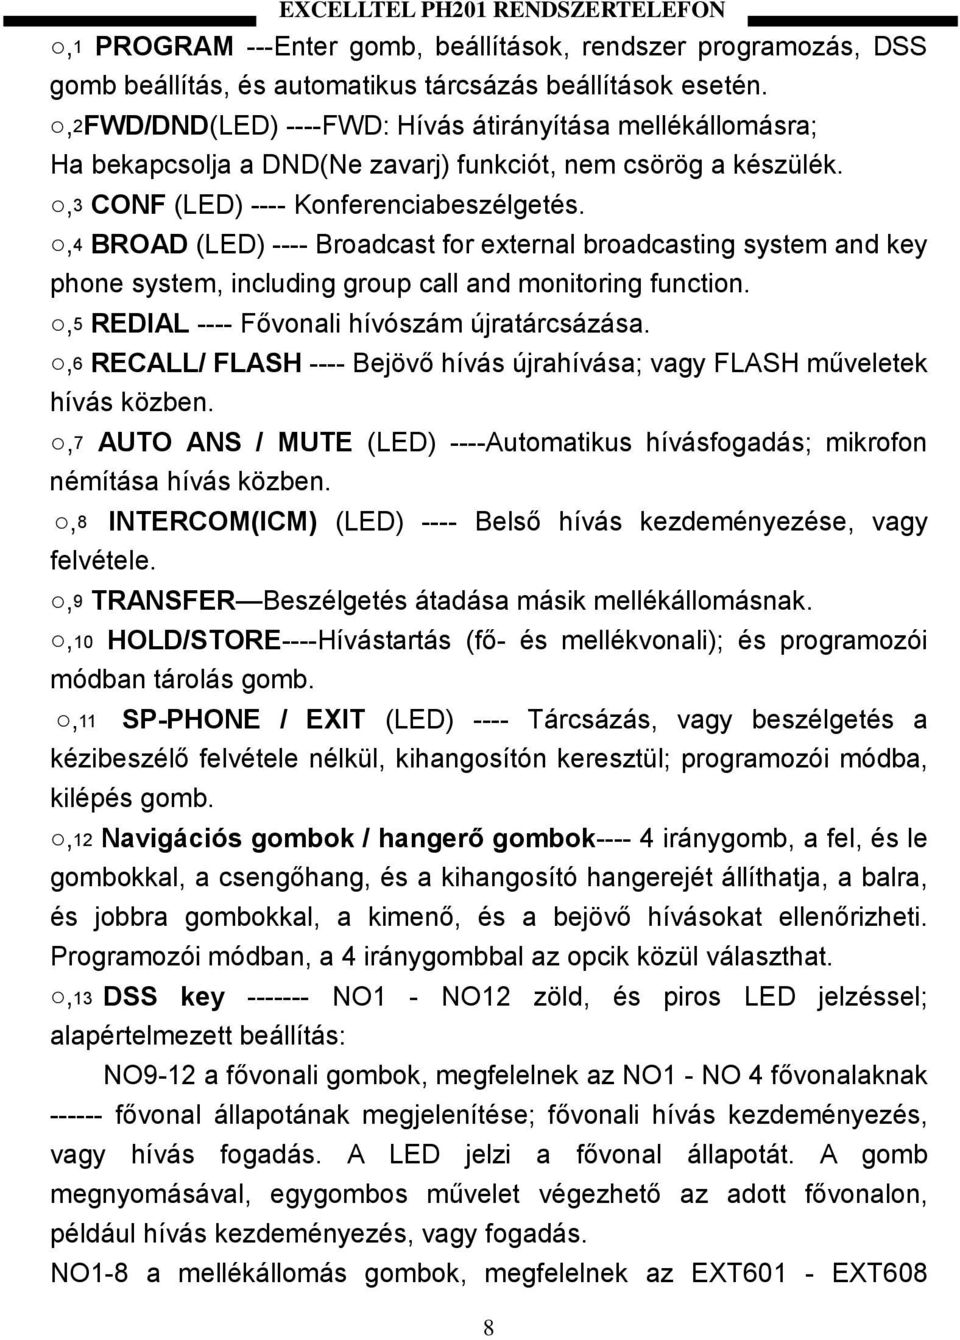 ,4 BROAD (LED) ---- Broadcast for external broadcasting system and key phone system, including group call and monitoring function.,5 REDIAL ---- Fővonali hívószám újratárcsázása.